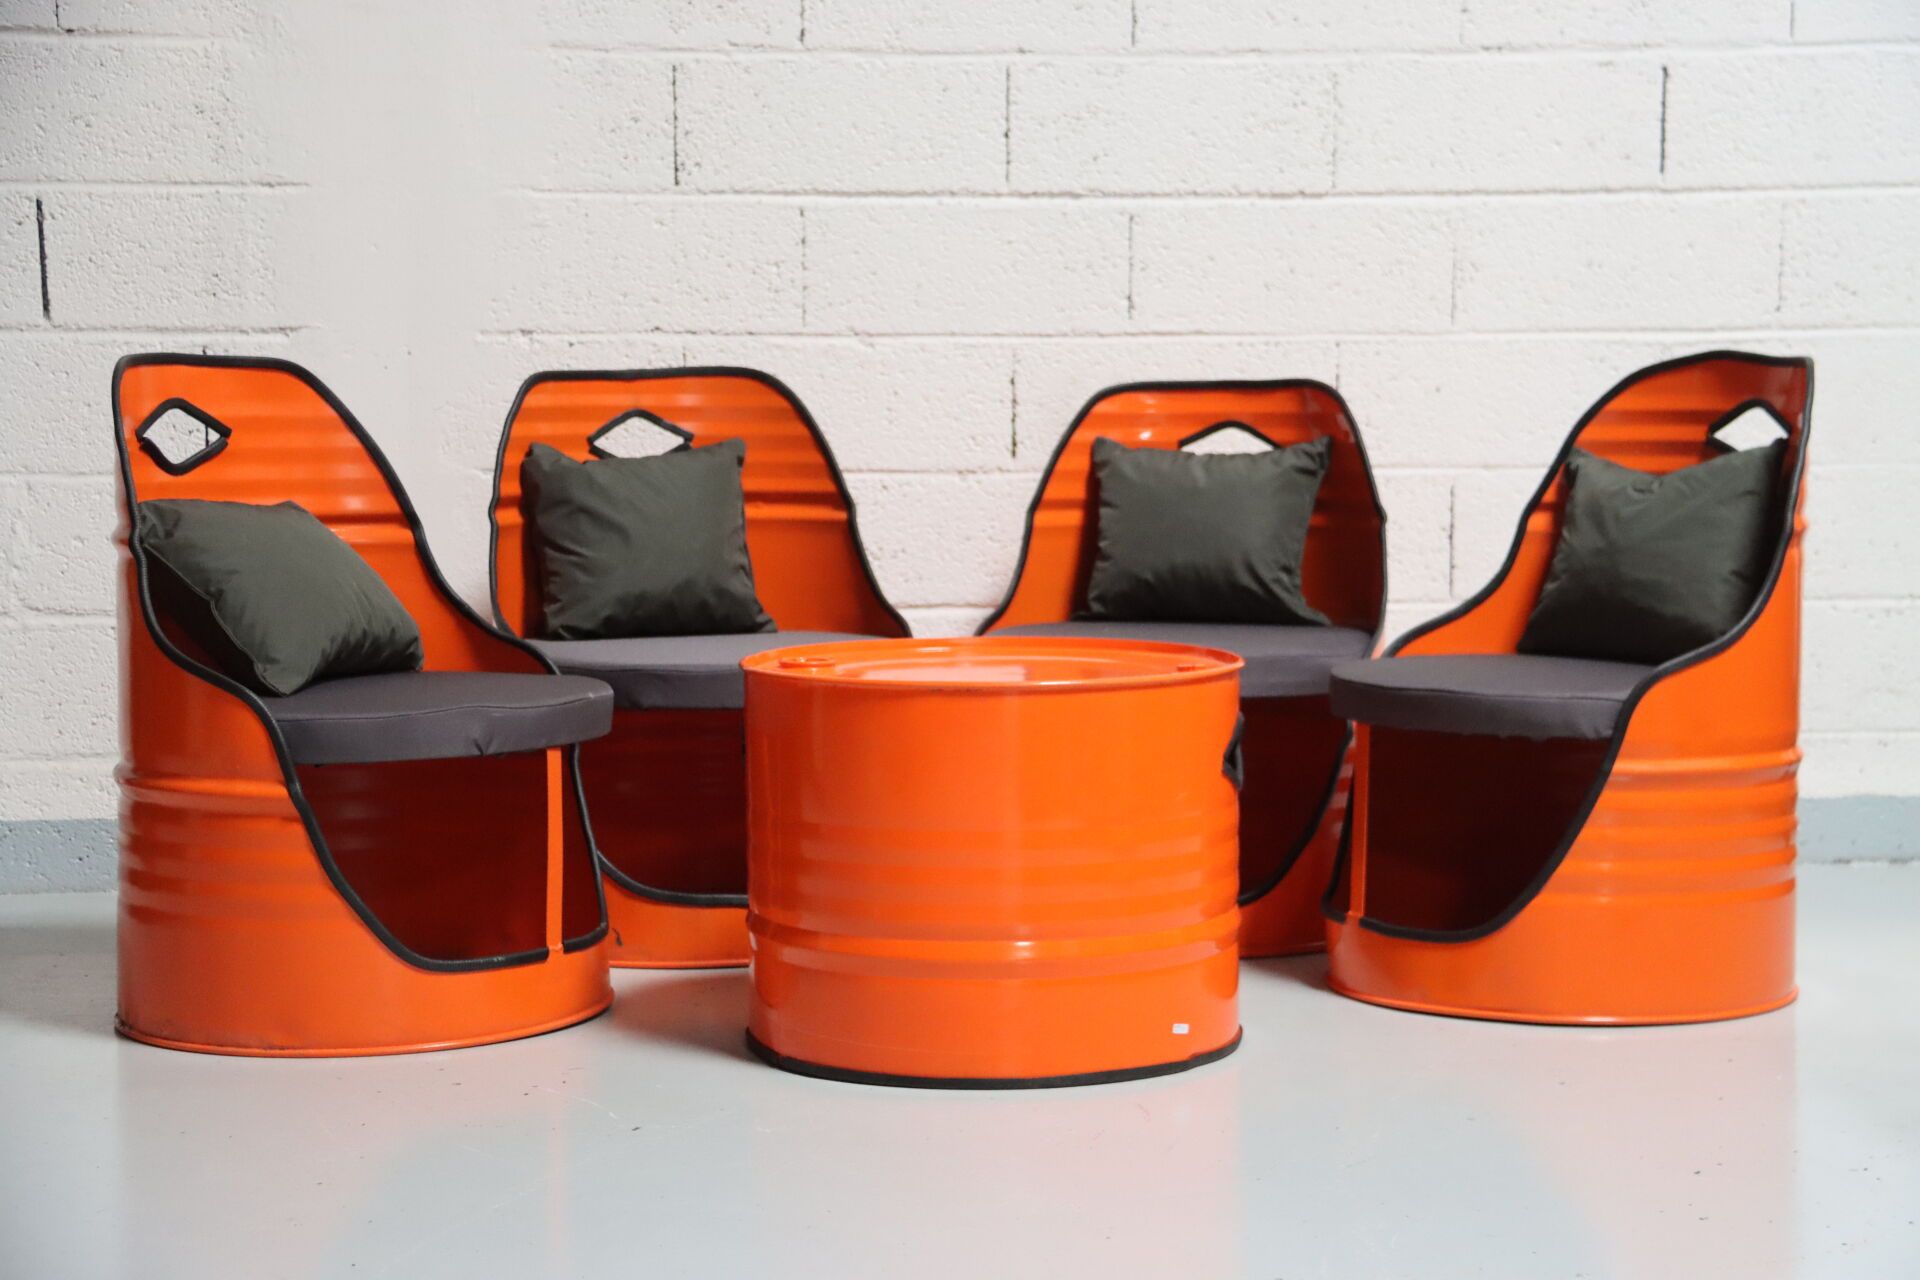 Null 用工业易拉罐制作的休息室，配有 4 把扶手椅和一张桌子。橙色。20 世纪作品。尺寸：43 x 60 x 60 厘米（咖啡桌）；座椅高度：39 厘米；靠&hellip;